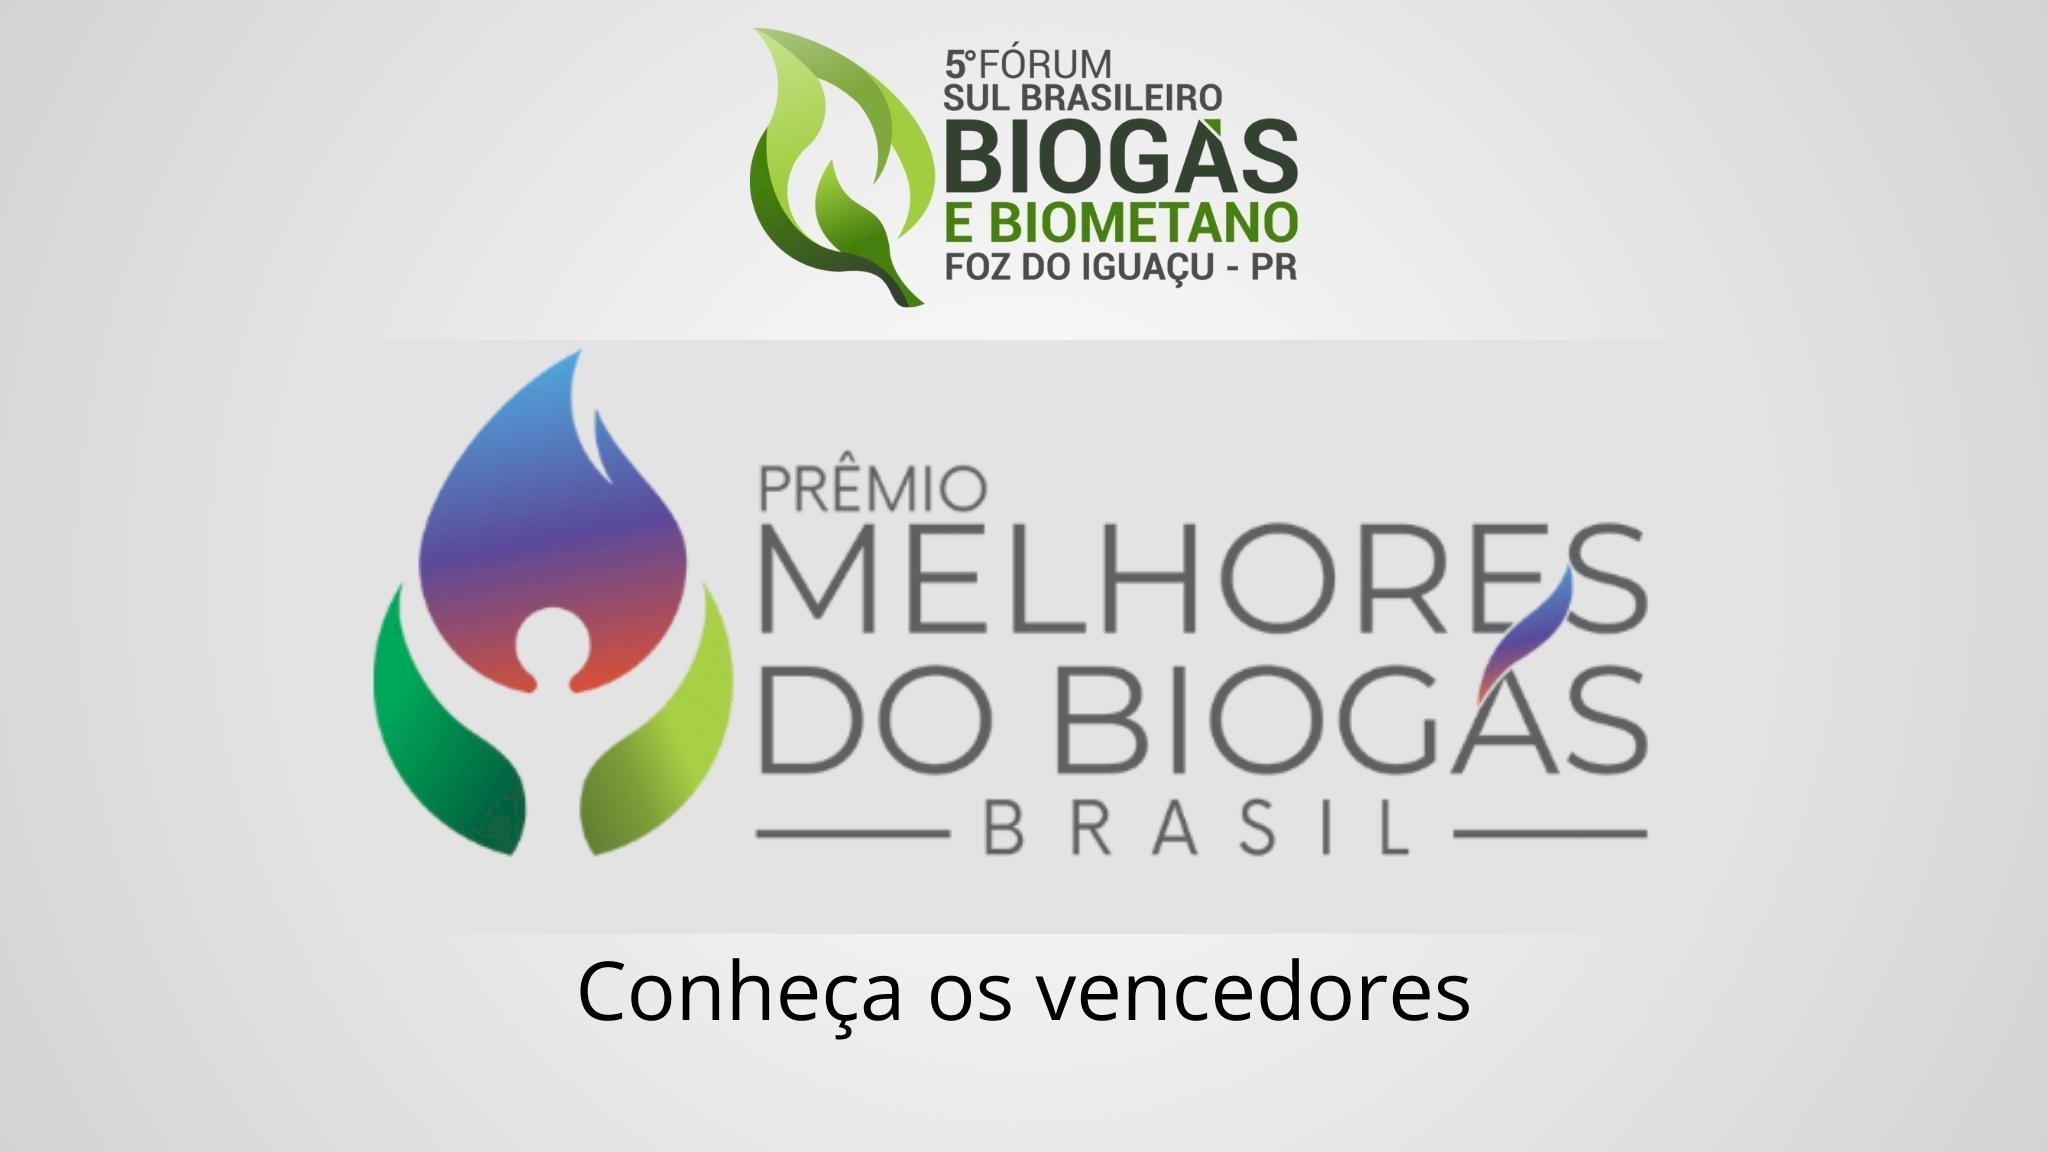 Conheça os vencedores do Prêmio Melhores do Biogás